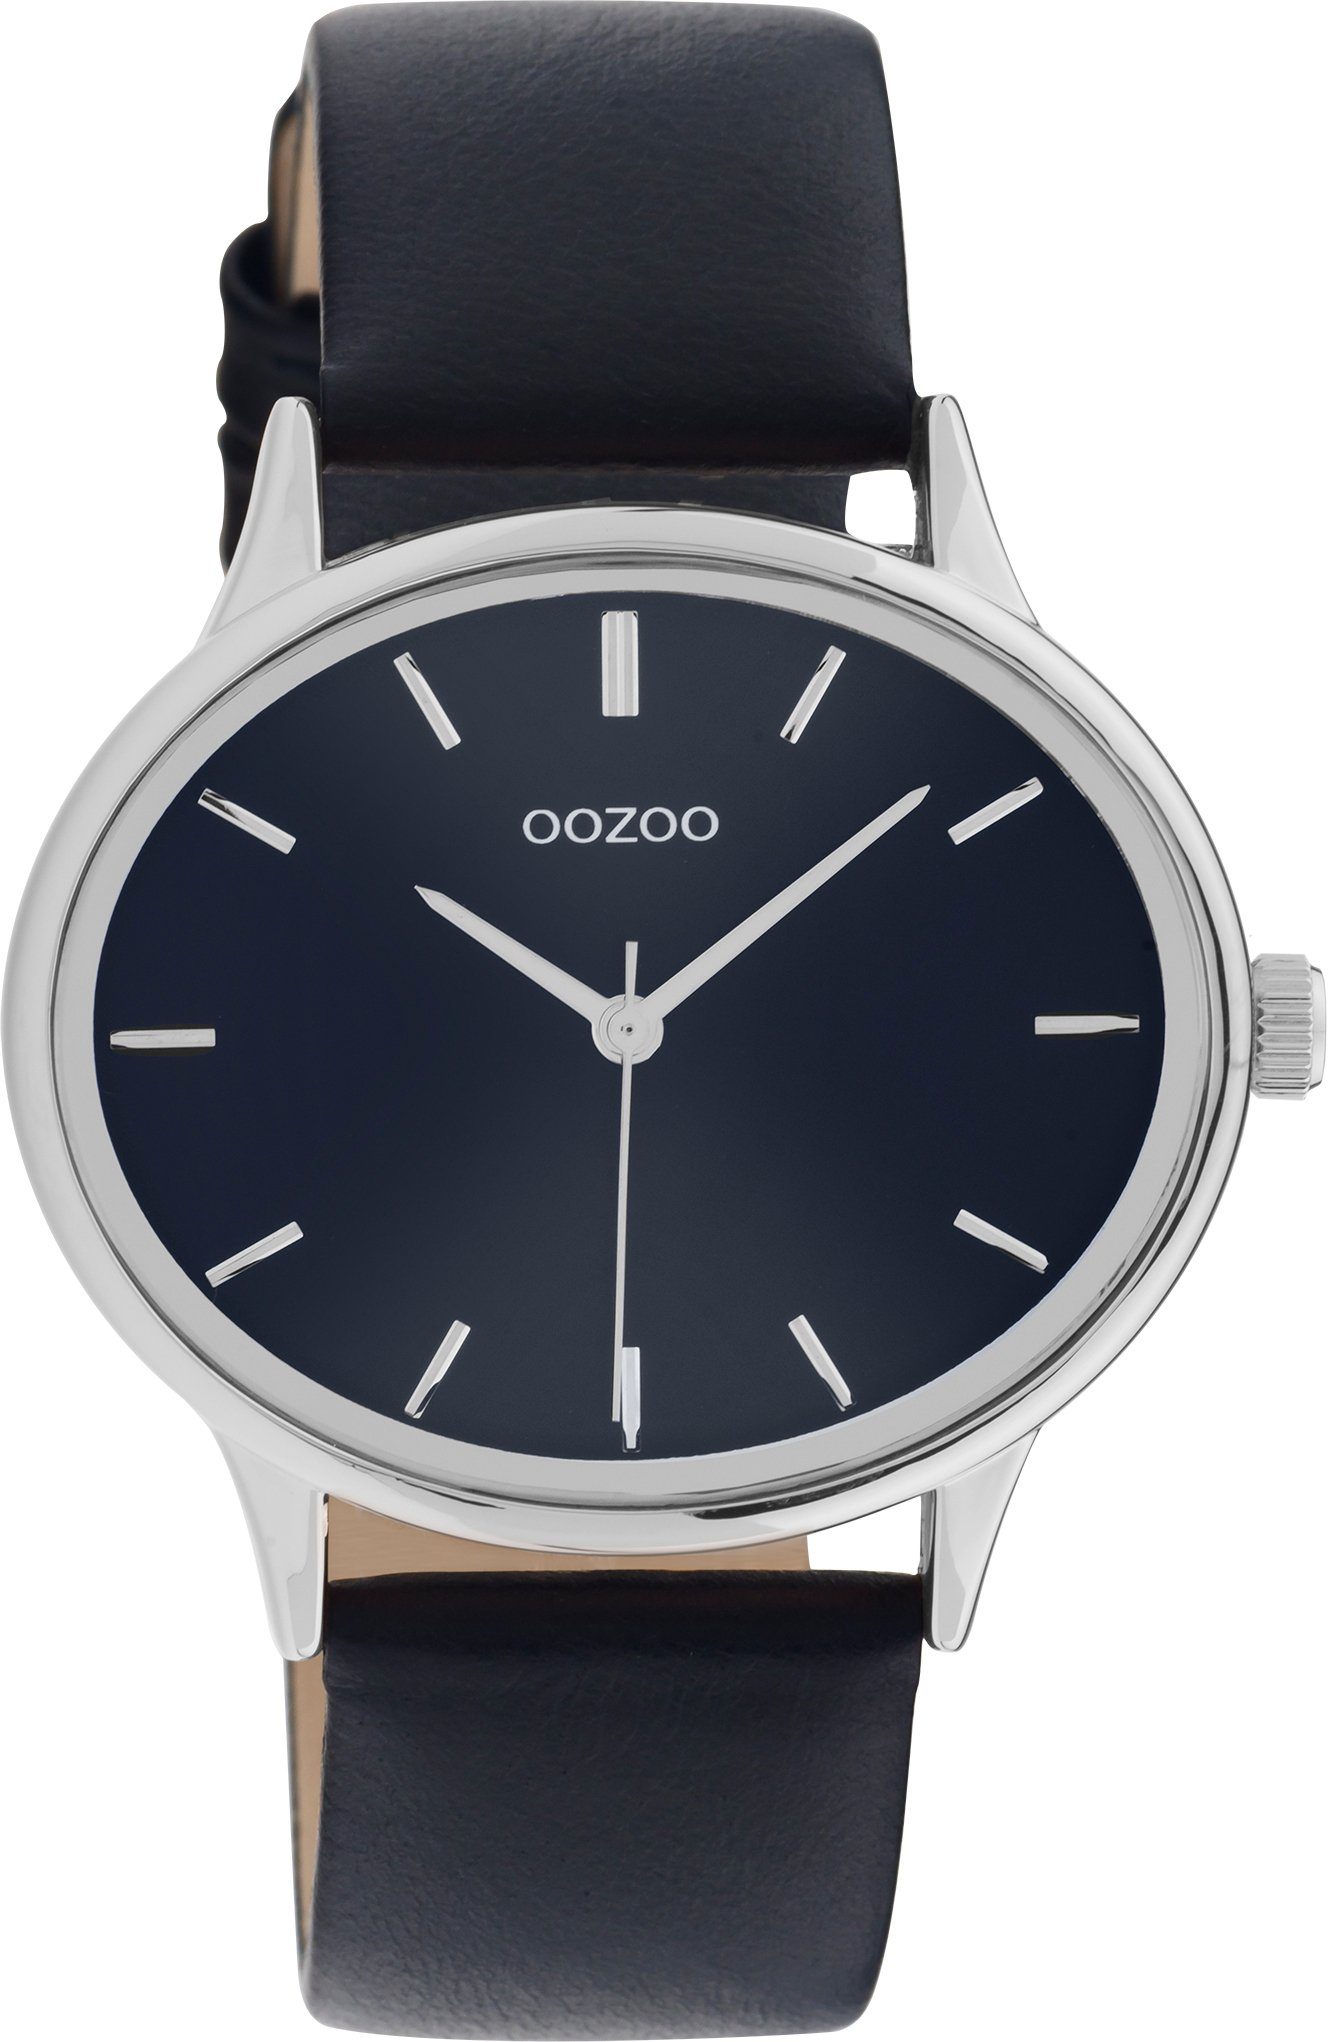 OOZOO Quarzuhr C11051, Armbanduhr, Damenuhr